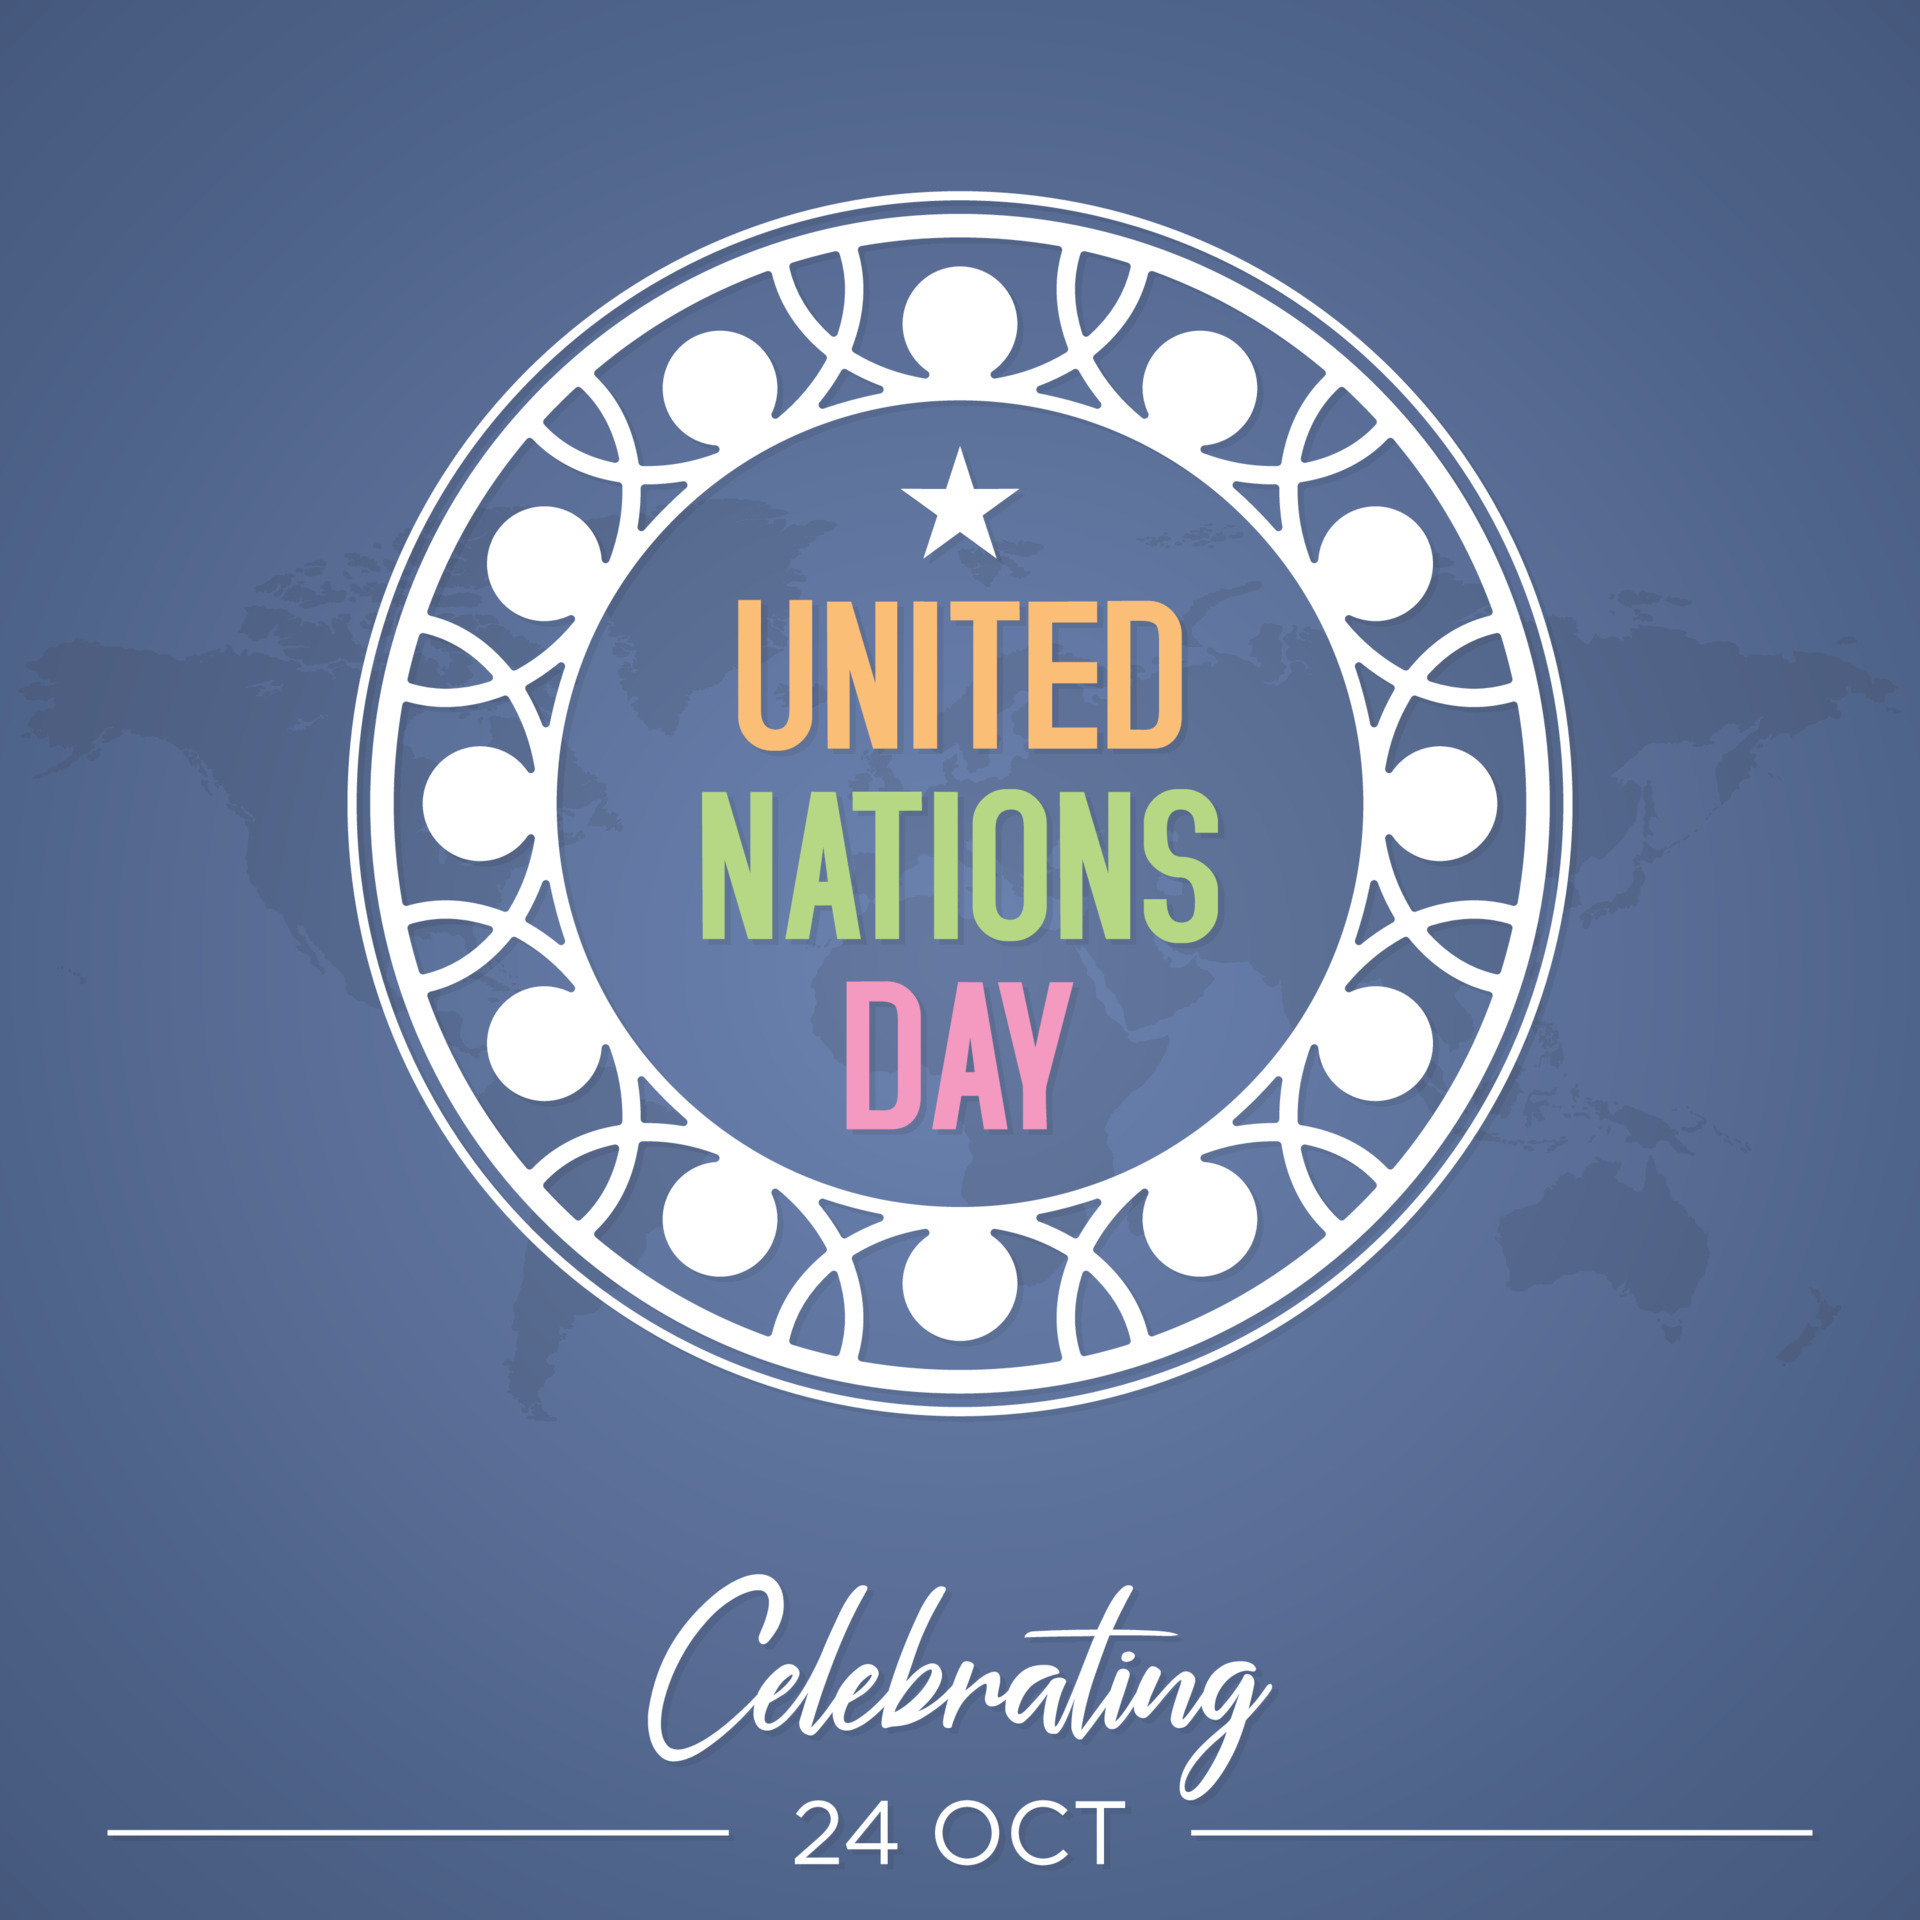 Hình nền chữ Liên Hợp Quốc: Hãy khám phá những bức hình nền chữ Liên Hợp Quốc để biểu đạt tình yêu thương và sự đoàn kết của chúng ta với những giá trị mà Liên Hợp Quốc đại diện. Hình nền đầy ý nghĩa và tình cảm sẽ khiến ngày kỷ niệm này trở nên đáng nhớ hơn bao giờ hết.